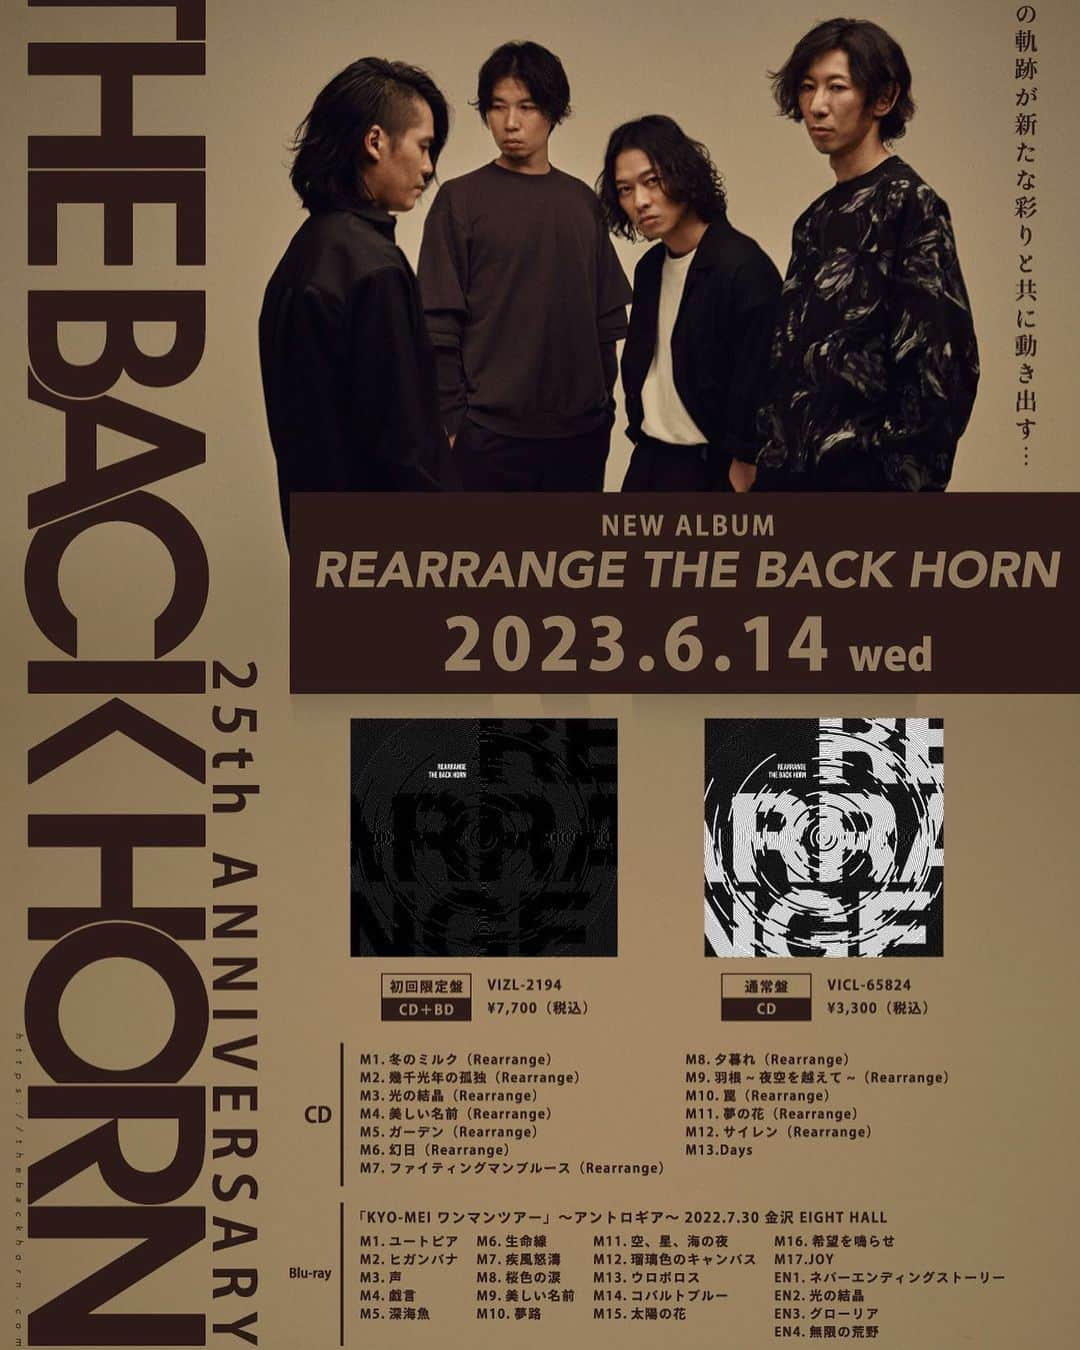 THE BACK HORNさんのインスタグラム写真 - (THE BACK HORNInstagram)「New Album「REARRANGE THE BACK HORN」収録曲順と正式曲タイトル及び、ジャケット公開。  NEW ALBUM 『REARRANGE THE BACK HORN』  2023年6月14日（水）発売 初回限定盤（CD+BD）VIZL-2194 / ¥7,700（税込） 通常盤（CD）VICL-65824 / ¥3,300（税込） ※初回限定盤（CD+BD）仕様概要：三方背ケース／3面2トレーデジパック／中綴じブック他  ＜CD収録内容＞ M1.冬のミルク（Rearrange） M2.幾千光年の孤独（Rearrange） M3.光の結晶（Rearrange） M4.美しい名前（Rearrange） M5.ガーデン（Rearrange） M6.幻日（Rearrange） M7.ファイティングマンブルース（Rearrange） M8.夕暮れ（Rearrange） M9.羽根~夜空を越えて~（Rearrange） M10.罠（Rearrange） M11.夢の花（Rearrange） M12.サイレン（Rearrange） M13.Days  ＜初回限定盤付属Blu-ray収録内容＞ 「KYO-MEI ワンマンツアー」～アントロギア～（2022.07.30 金沢 EIGHT HALL）  M1.ユートピア M2.ヒガンバナ M3.声 M4.戯言 M5.深海魚 M6.生命線 M7.疾風怒濤 M8.桜色の涙 M9.美しい名前 M10.夢路 M11.空、星、海の夜 M12.瑠璃色のキャンバス M13.ウロボロス M14.コバルトブルー M15.太陽の花 M16.希望を鳴らせ M17.JOY EN1.ネバーエンディングストーリー EN2.光の結晶 EN3.グローリア EN4.無限の荒野 ＊ツアーメイキング映像収録  【特典対象店舗・特典内容】 ●-THE BACK HORN CLUB-銀河遊牧民（FC専用カート） ・『REARRENGE THE BACK HORN』ジャケットデザイン・ステッカー（50×50mm） ・ THE BACK HORNポストカード（A6サイズ）  ●TOWER RECORDS 全国各店 / TOWER RECORDS ONLINE / HMV全国各店 / HMV&BOOKS online / Amazon.co.jp/ 楽天ブックス / VICTOR ONLINE STORE ・『REARRENGE THE BACK HORN』ジャケットデザイン・ステッカー（50×50mm）  ※Amazon.co.jp、楽天ブックス では、特典付き商品のカートがアップされます。 特典をご要望のお客様は特典付き商品をお買い求め下さい。 ※特典には数に限りがございます。お早めにご予約下さい。 ※対象店舗は順次追加となることがございます。 ※一部、特典の取扱いが無い店舗もございます。予めご了承下さい。 ※特典の内容・デザインは予告なく変更する場合がございます。 ※確実に入手をご希望の方は、事前に各店舗様へご確認いただくことをお奨めいたします。  □W購入特典 期間内に「銀河遊牧民（FC専用カート）」より対象商品をご購入の方に、スペシャル特典として「THE BACK HORN ポストカード４枚セット」（A6サイズ）をプレゼント！  【対象期間】2023年5月10日（水）23:59まで  【対象商品①】 6月14日発売　New Album 『REARRANGE THE BACK HORN』 ■初回限定盤：VIZL-2194 https://victor-store.jp/item/36950 ■通常盤：VICL-65824 https://victor-store.jp/item/36951  【対象商品②】 2月22日発売　Live Blu-ray『マニアックヘブンvol.13 & vol.14』（NXS-718） https://victor-store.jp/item/35521  ※すでに「銀河遊牧民（FC専用カート）」より　Live Blu-ray『マニアックヘブンvol.13 & vol.14』をご購入済みの方も対象となります。 ※別途ご案内の銀河遊牧民（FC専用カート）特典『「REARRENGE THE BACK HORN」ジャケットデザイン・ステッカー（50×50mm）』および『THE BACK HORNポストカード（A6サイズ）』も対象となります。 ※対象作品をご購入の際、同一の会員アカウントでのご注文をお願いいたします。異なるアカウントでのご注文では、W購入の確認が取れないため対象外とさせていただきます。 ※商品、特典の準備数には限りがございます。準備数に達ししだい、予告なく販売を中止する場合がございます。予めご了承ください。 ※特典の内容・デザインは予告なく変更する場合がございます。」4月25日 18時00分 - thebackhorn